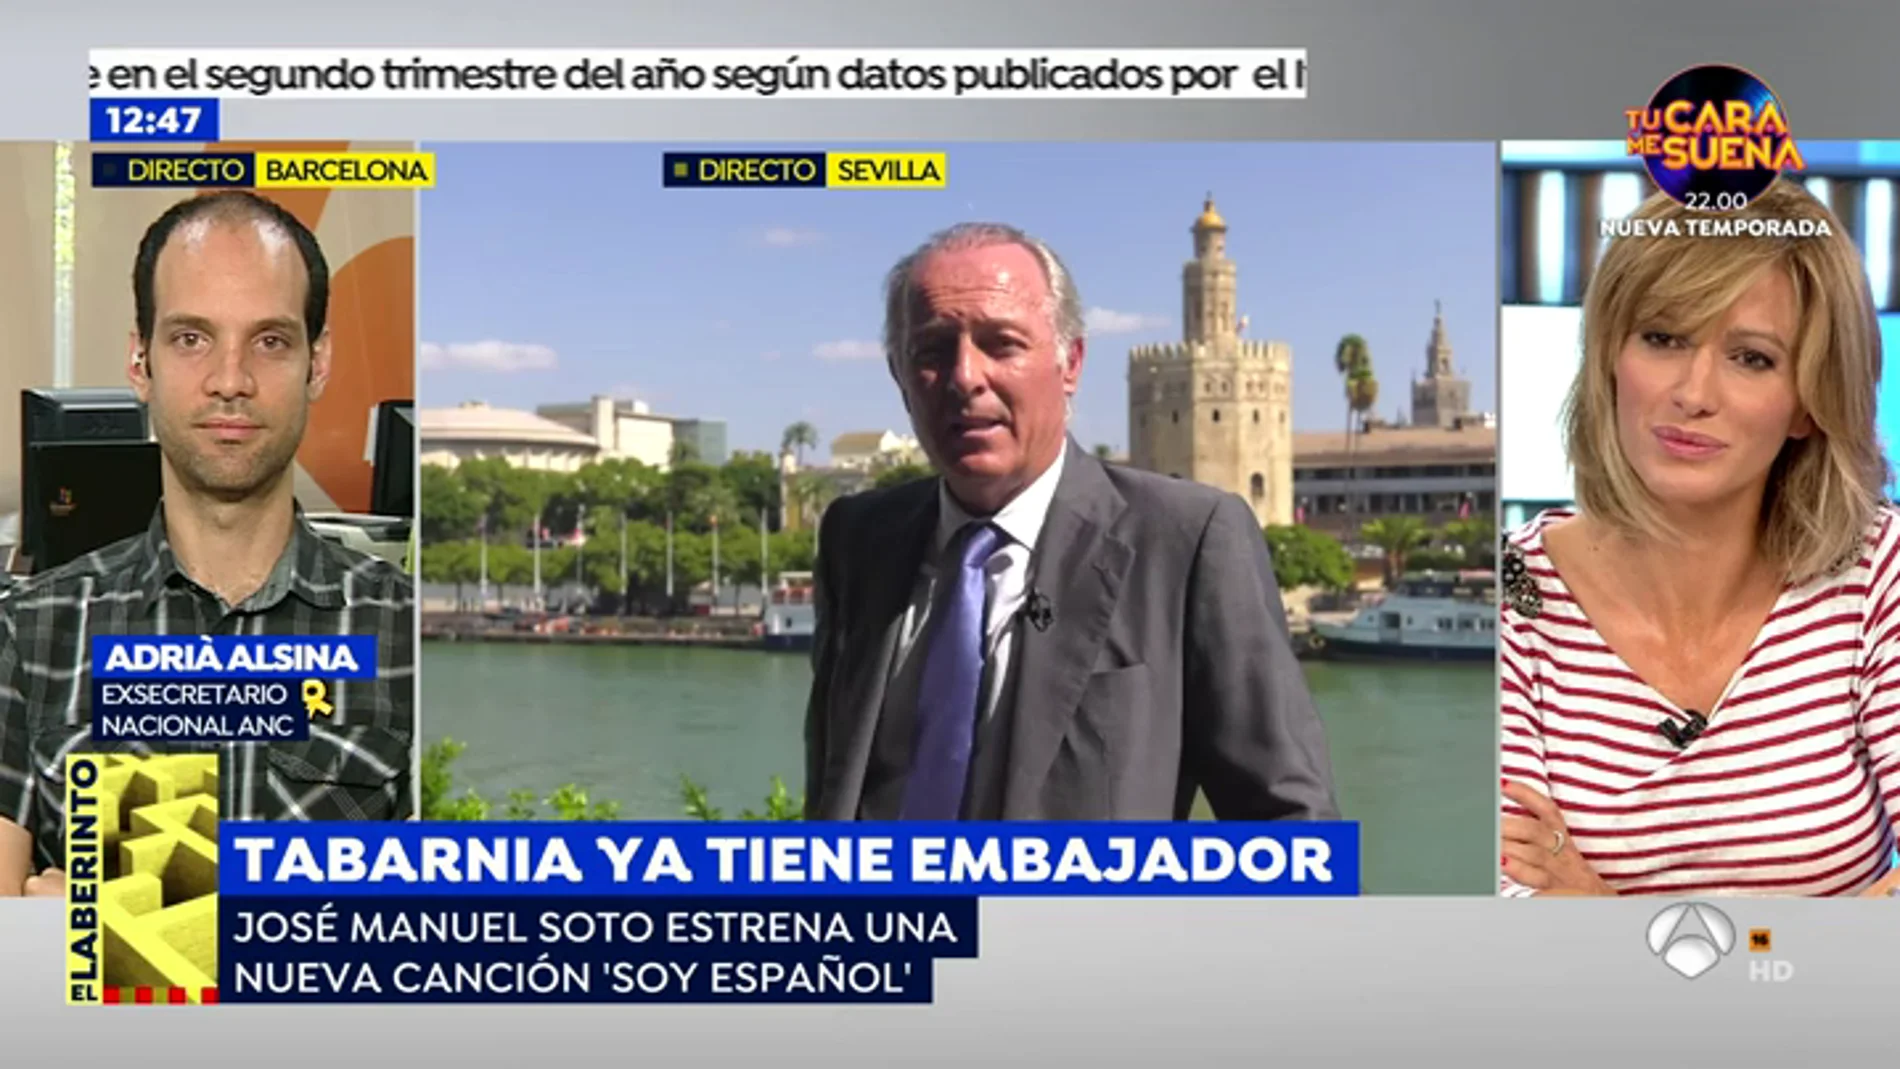 José Manuel Soto, nuevo embajador de Tabarnia: "Sentirse español no es facha, ni de izquierdas ni de derechas"